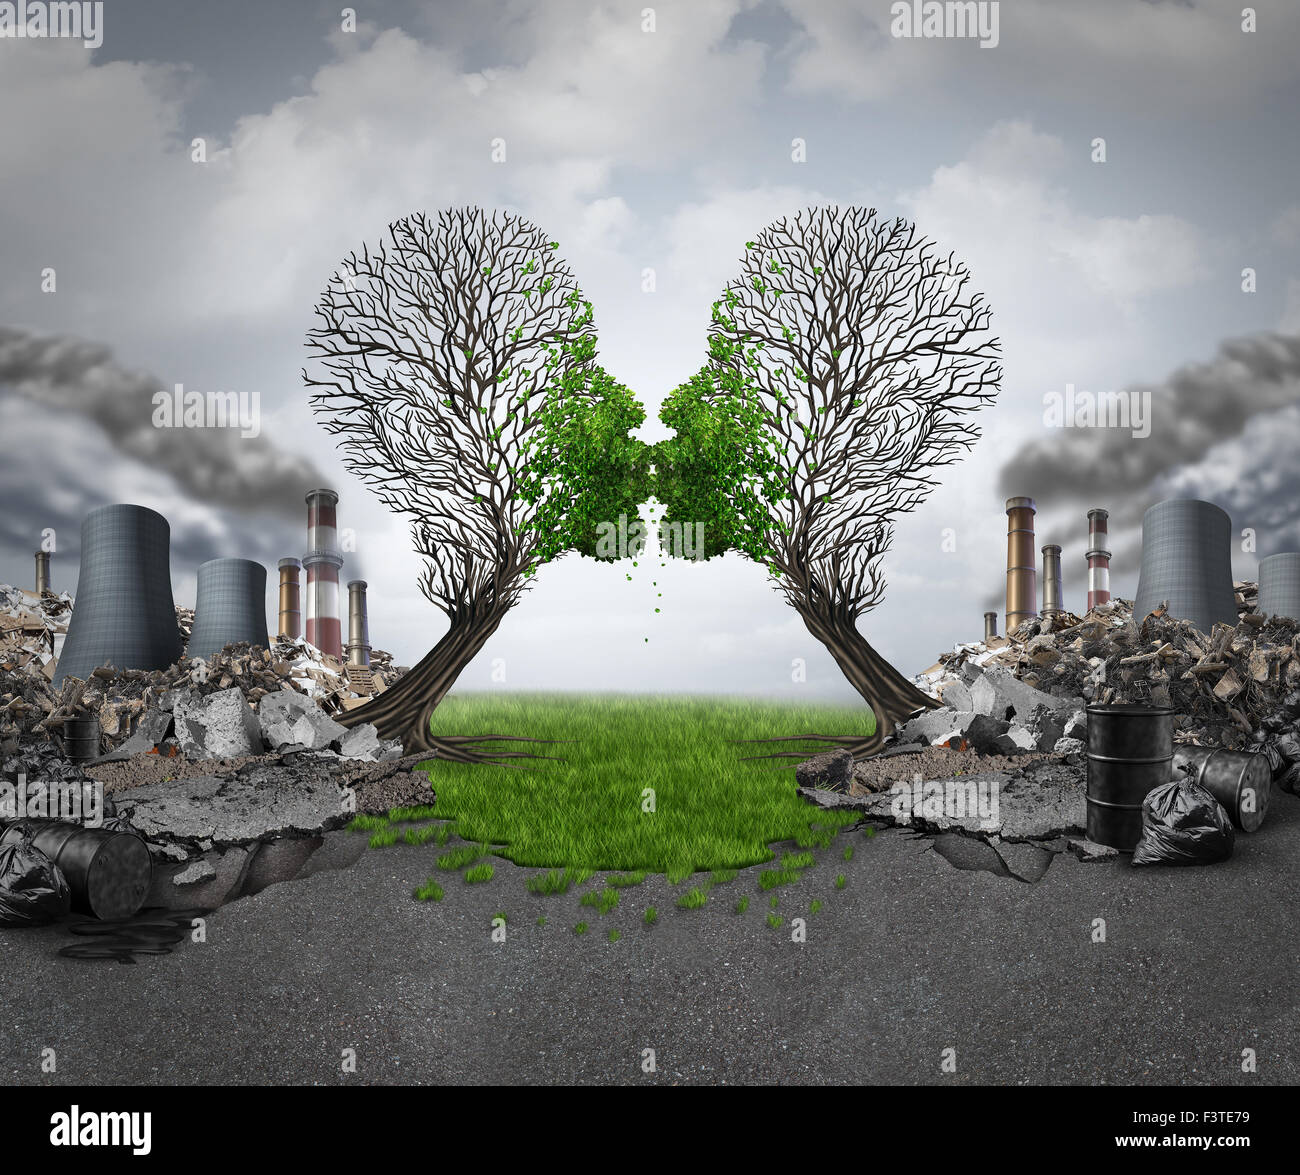 Il clima di recupero ambientale e di rinnovamento come due alberi vuoti a forma di teste umane baciare e il rilancio della nuova crescita verde fuori Foto Stock